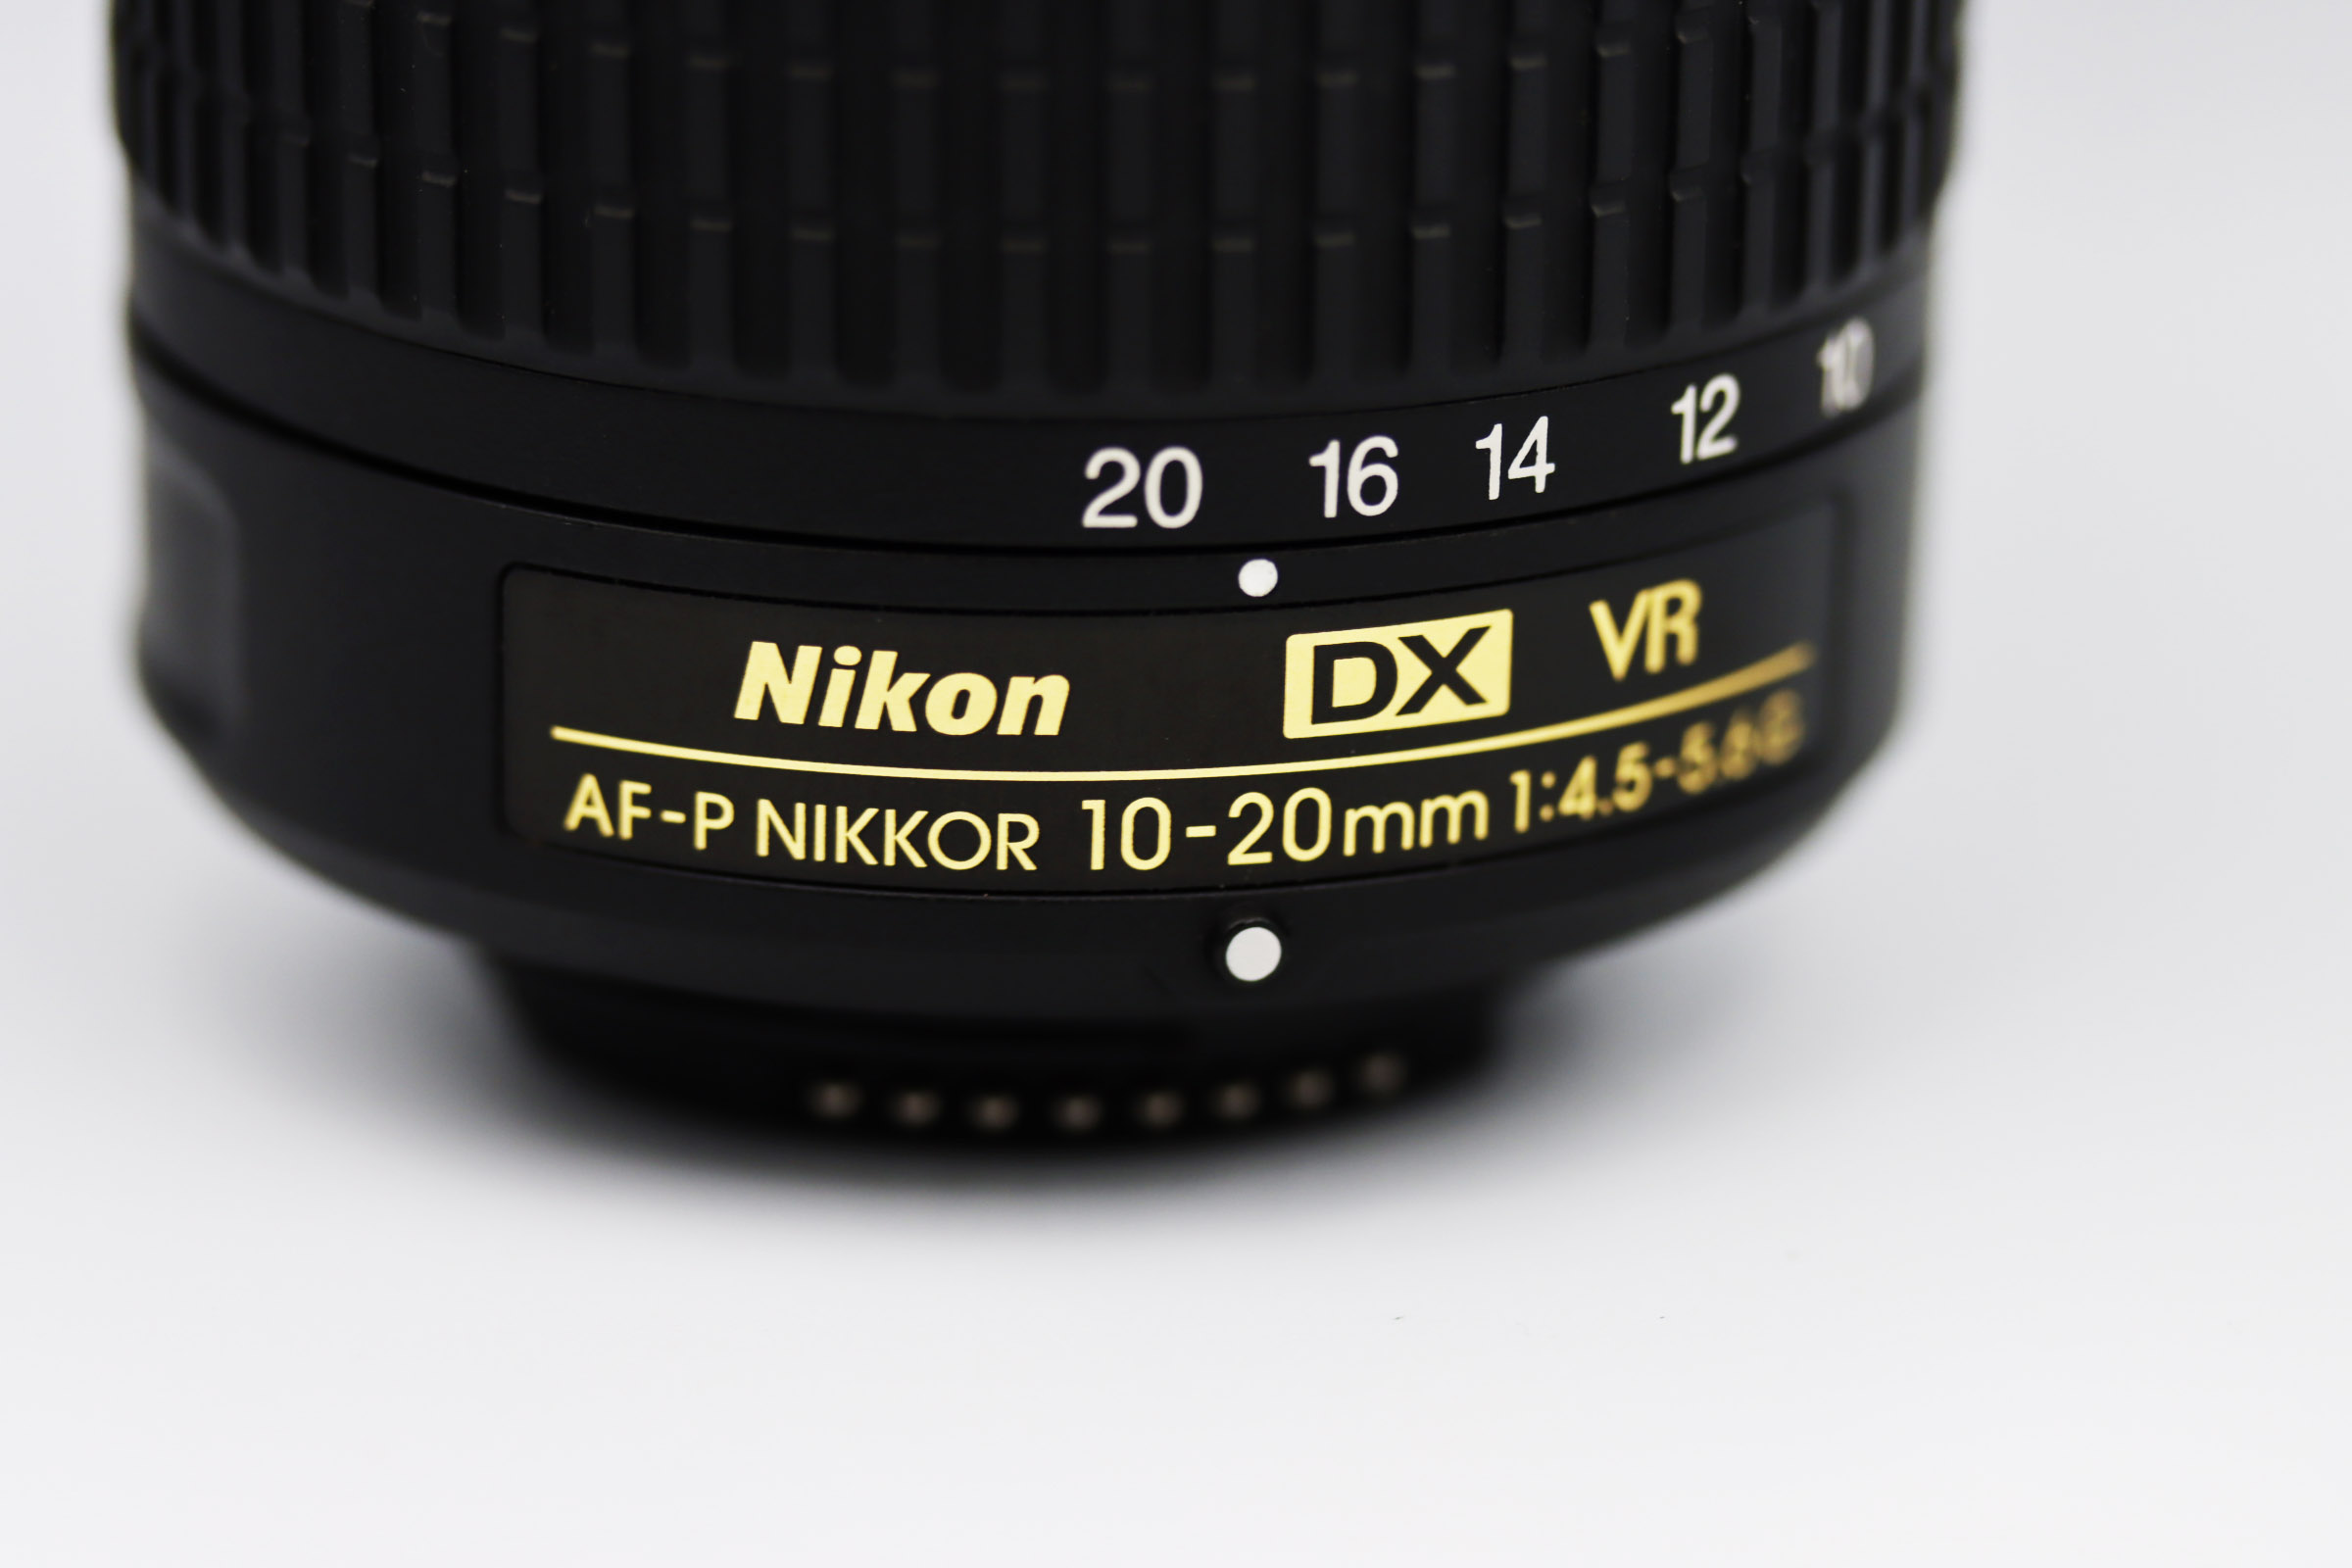 Nikon DX AF-P NIKKOR 10-20mm 4.5-5.6 - レンズ(ズーム)